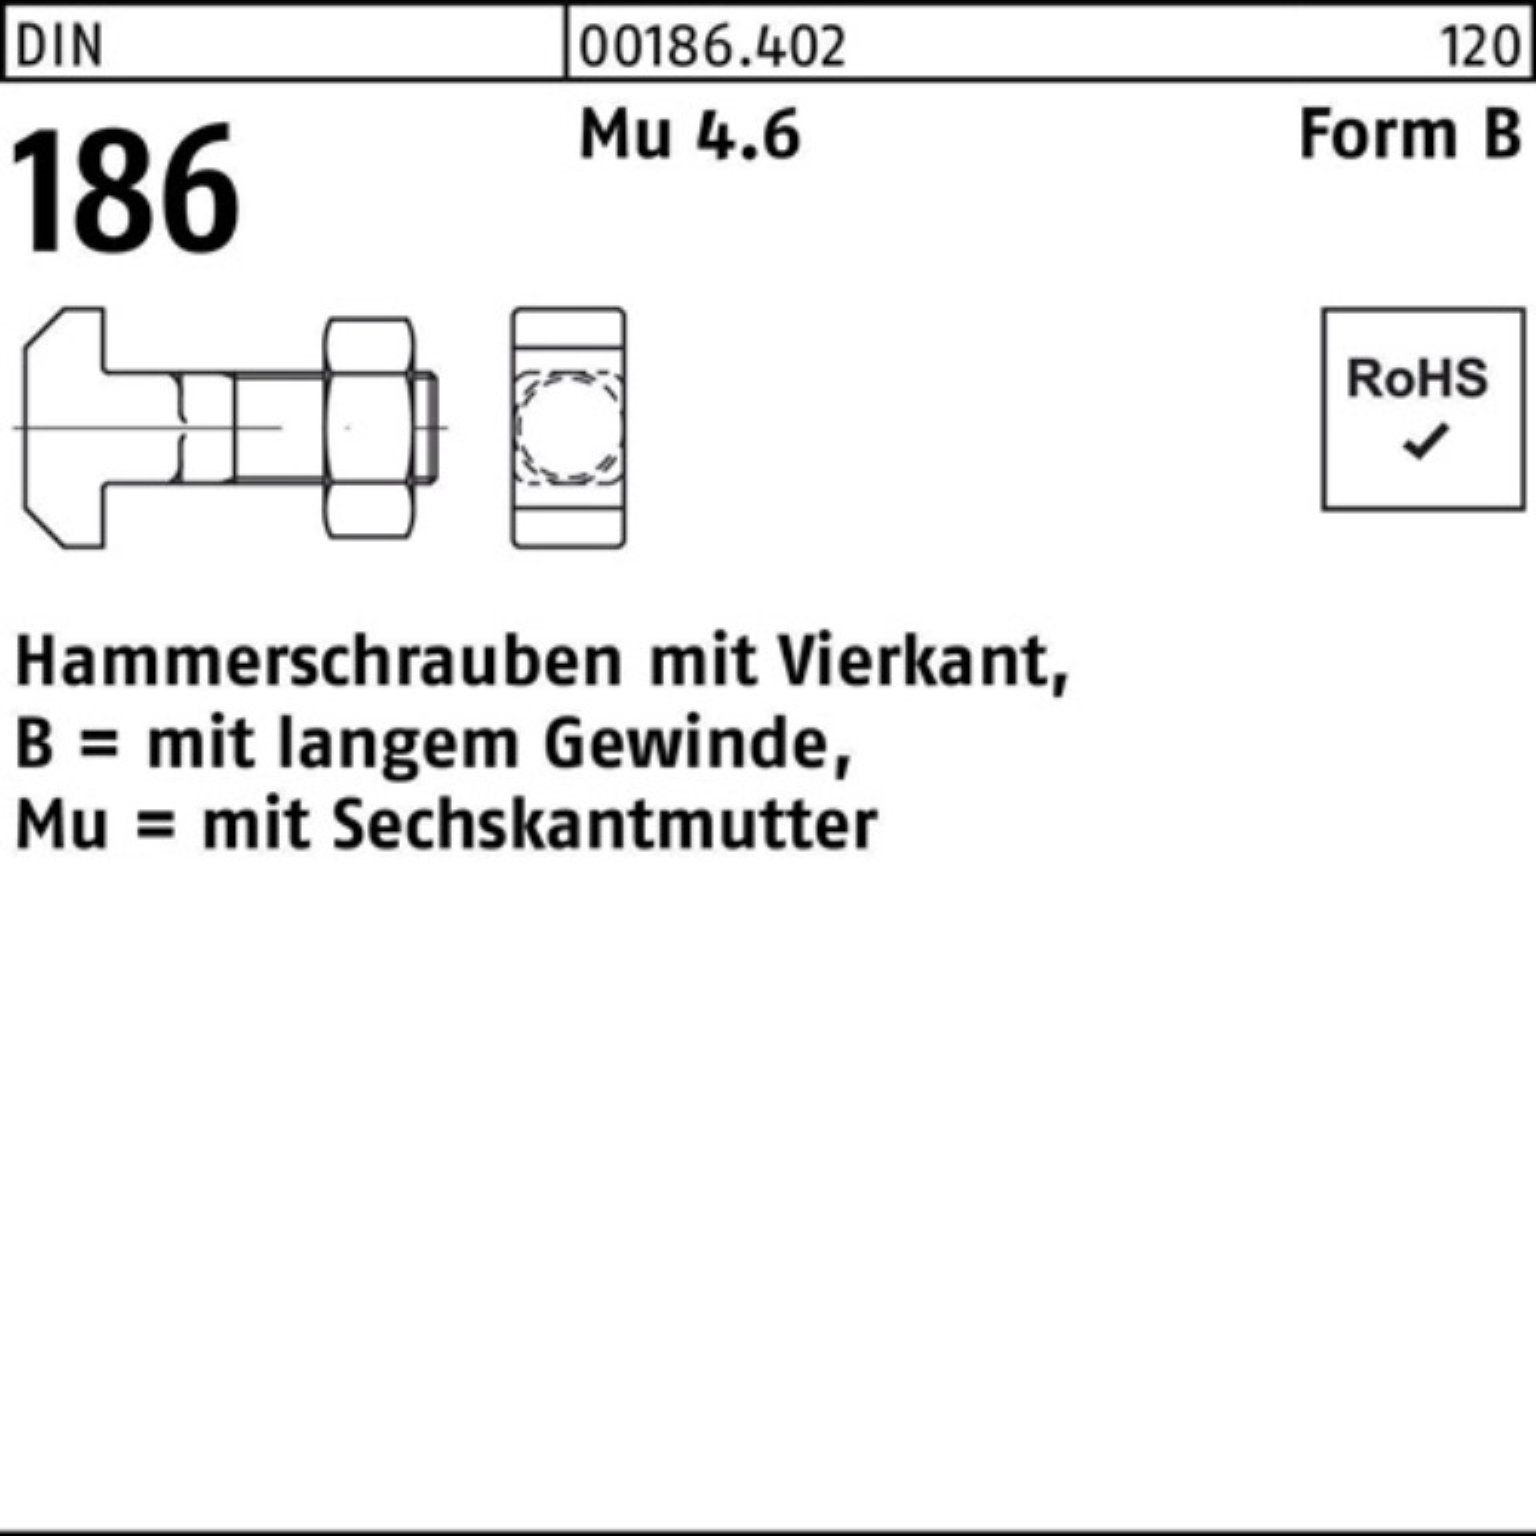 6-ktmutter Reyher 10x Pack Schraube DIN 186 100er 60 FormB Hammerschraube BM Vierkant